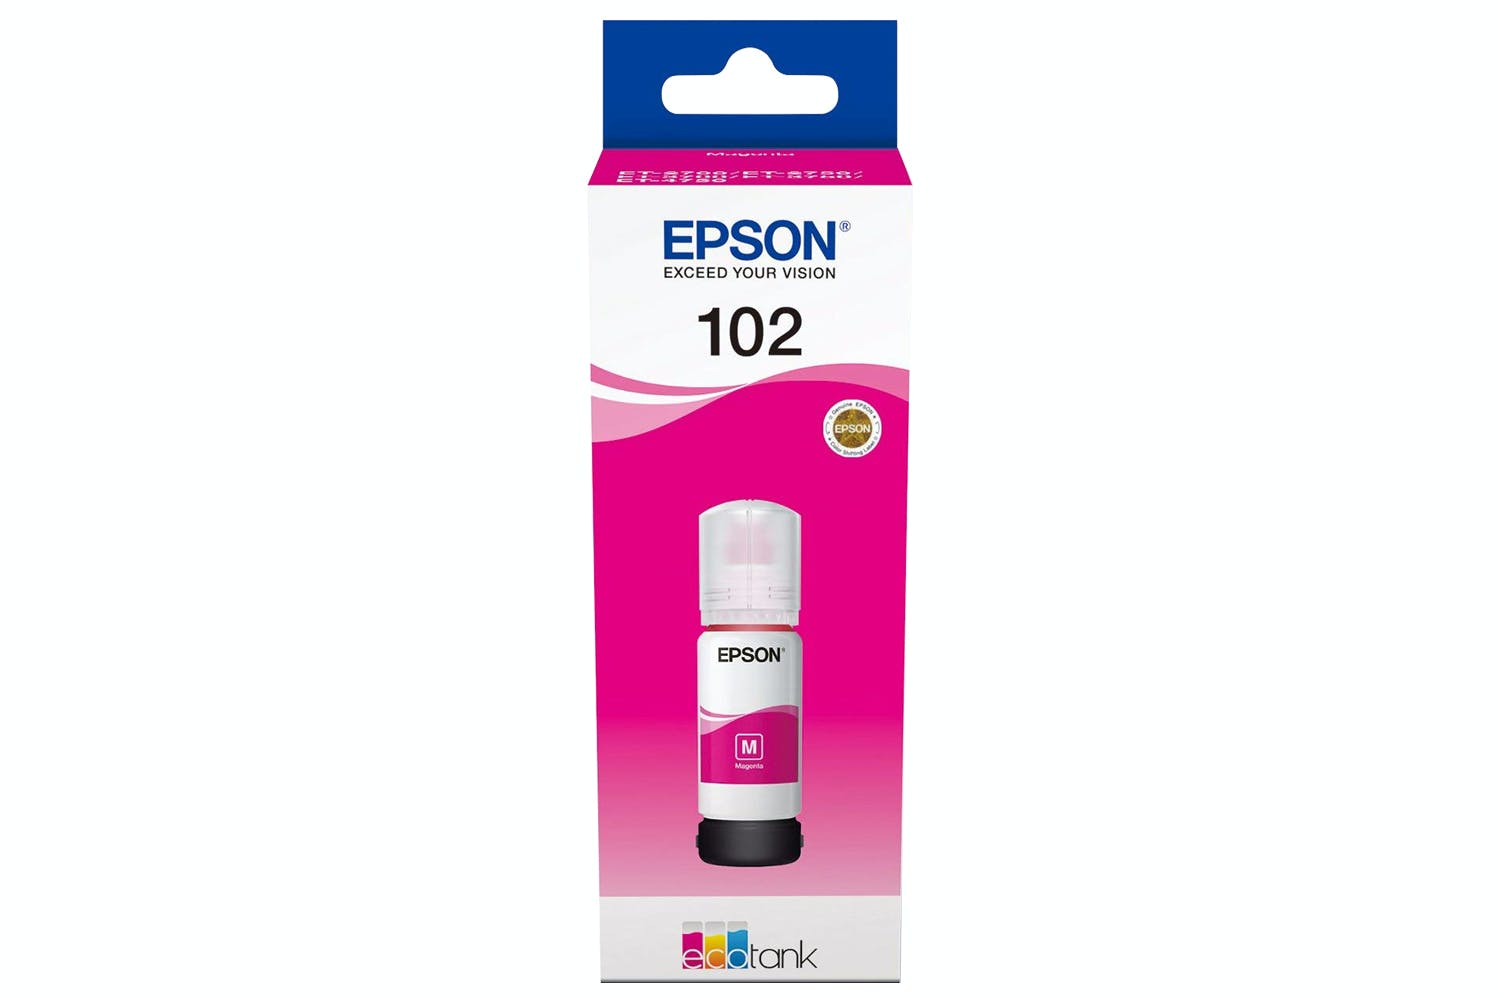 Encre Epson 102 Magenta - Kamera Express